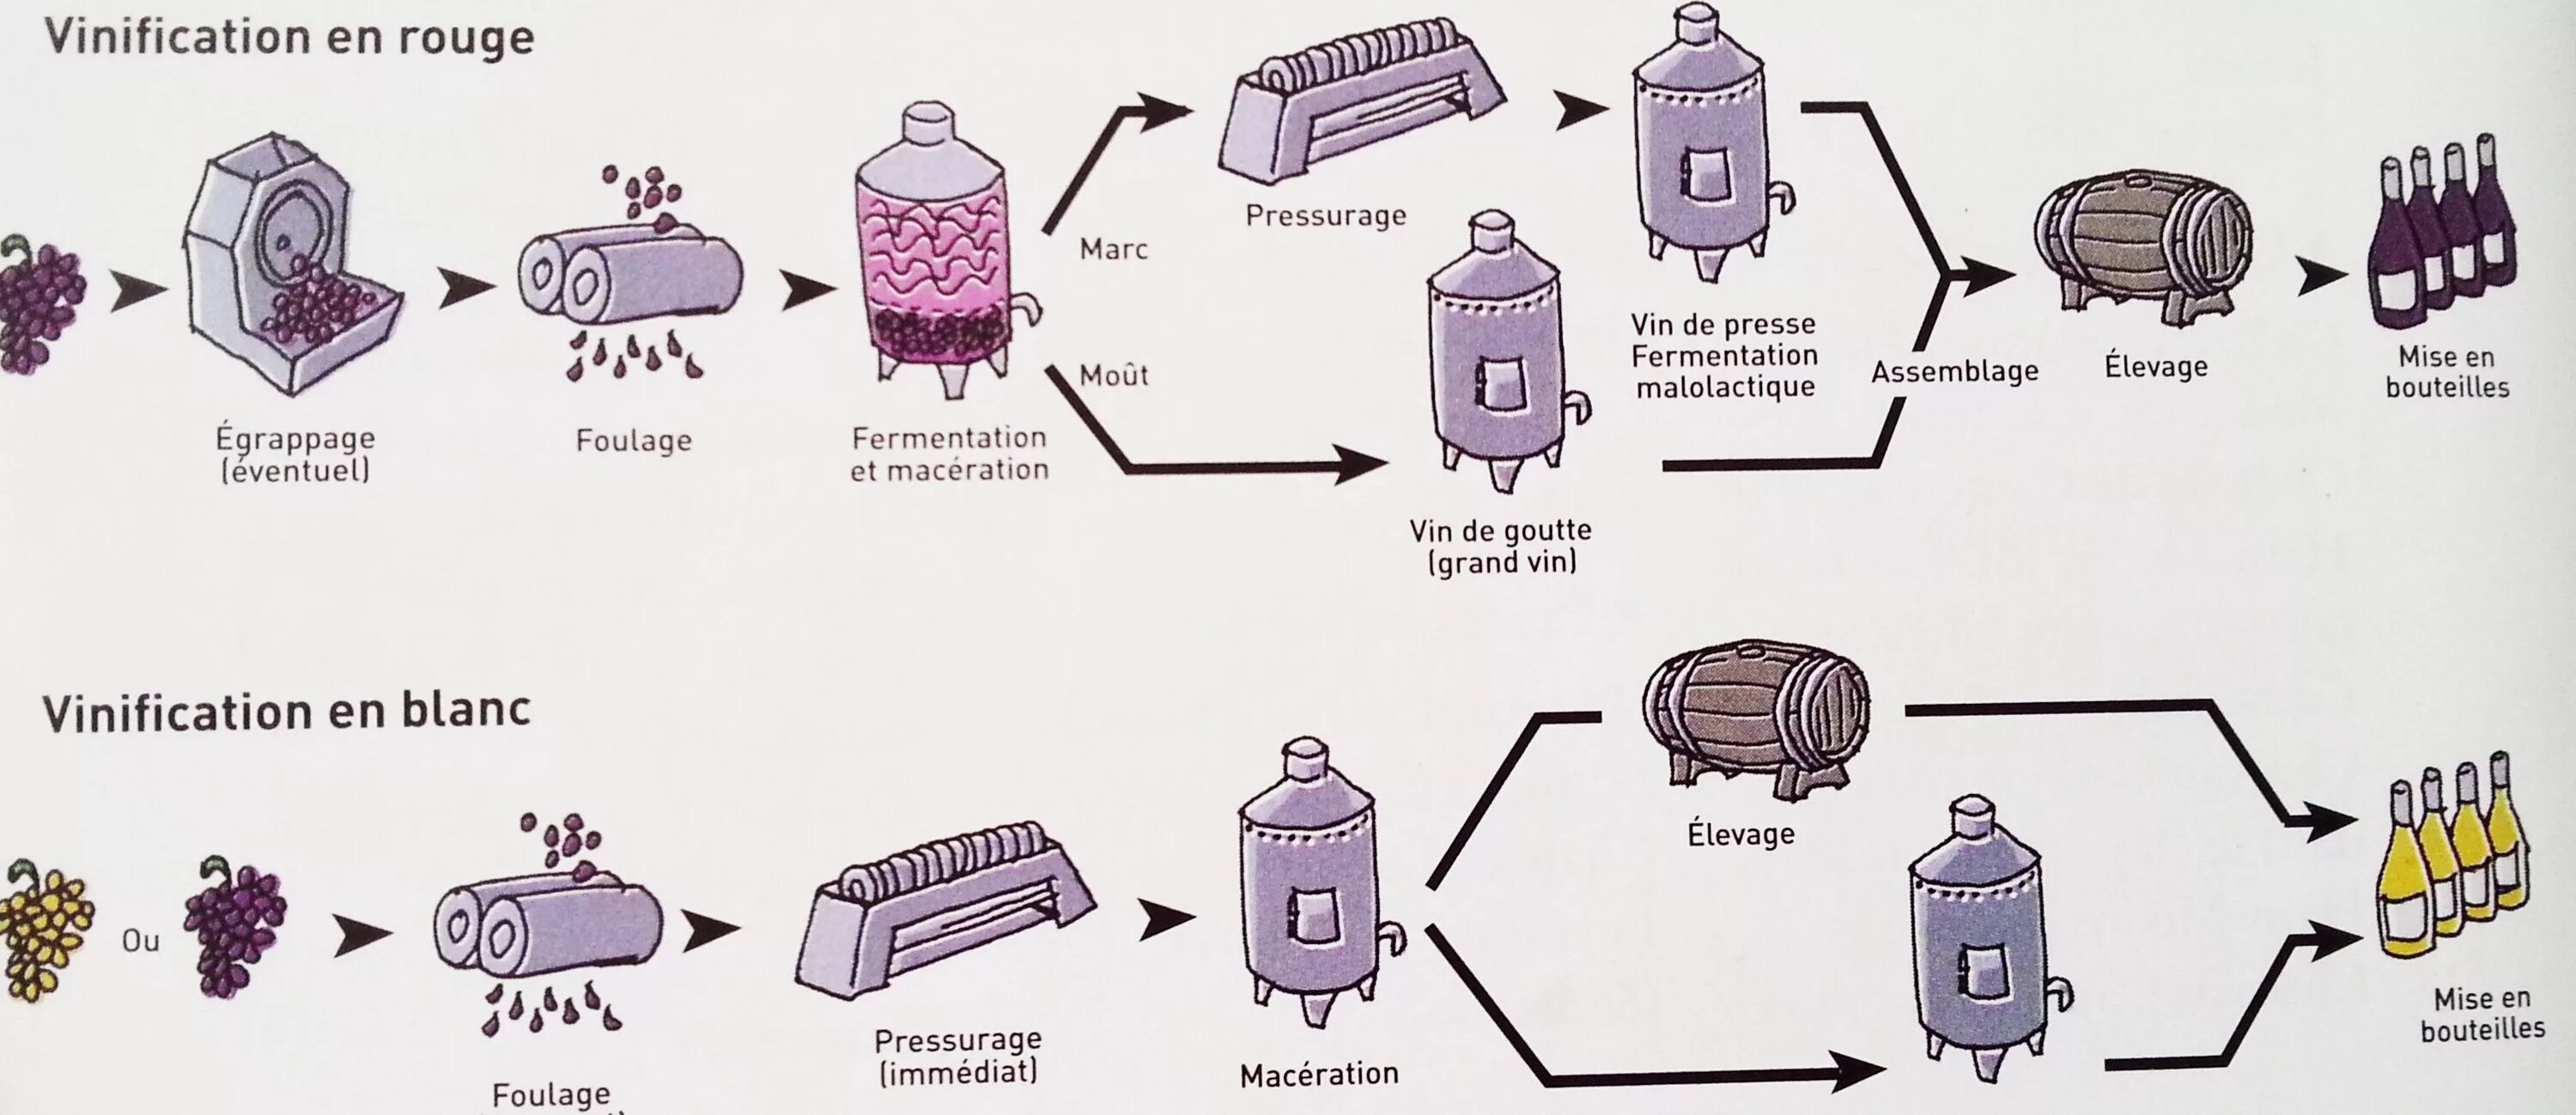 Производство вина технология схема. Схема производства виноградных вин. Схема производства белого вина. Технология производства вина технологическая схема.